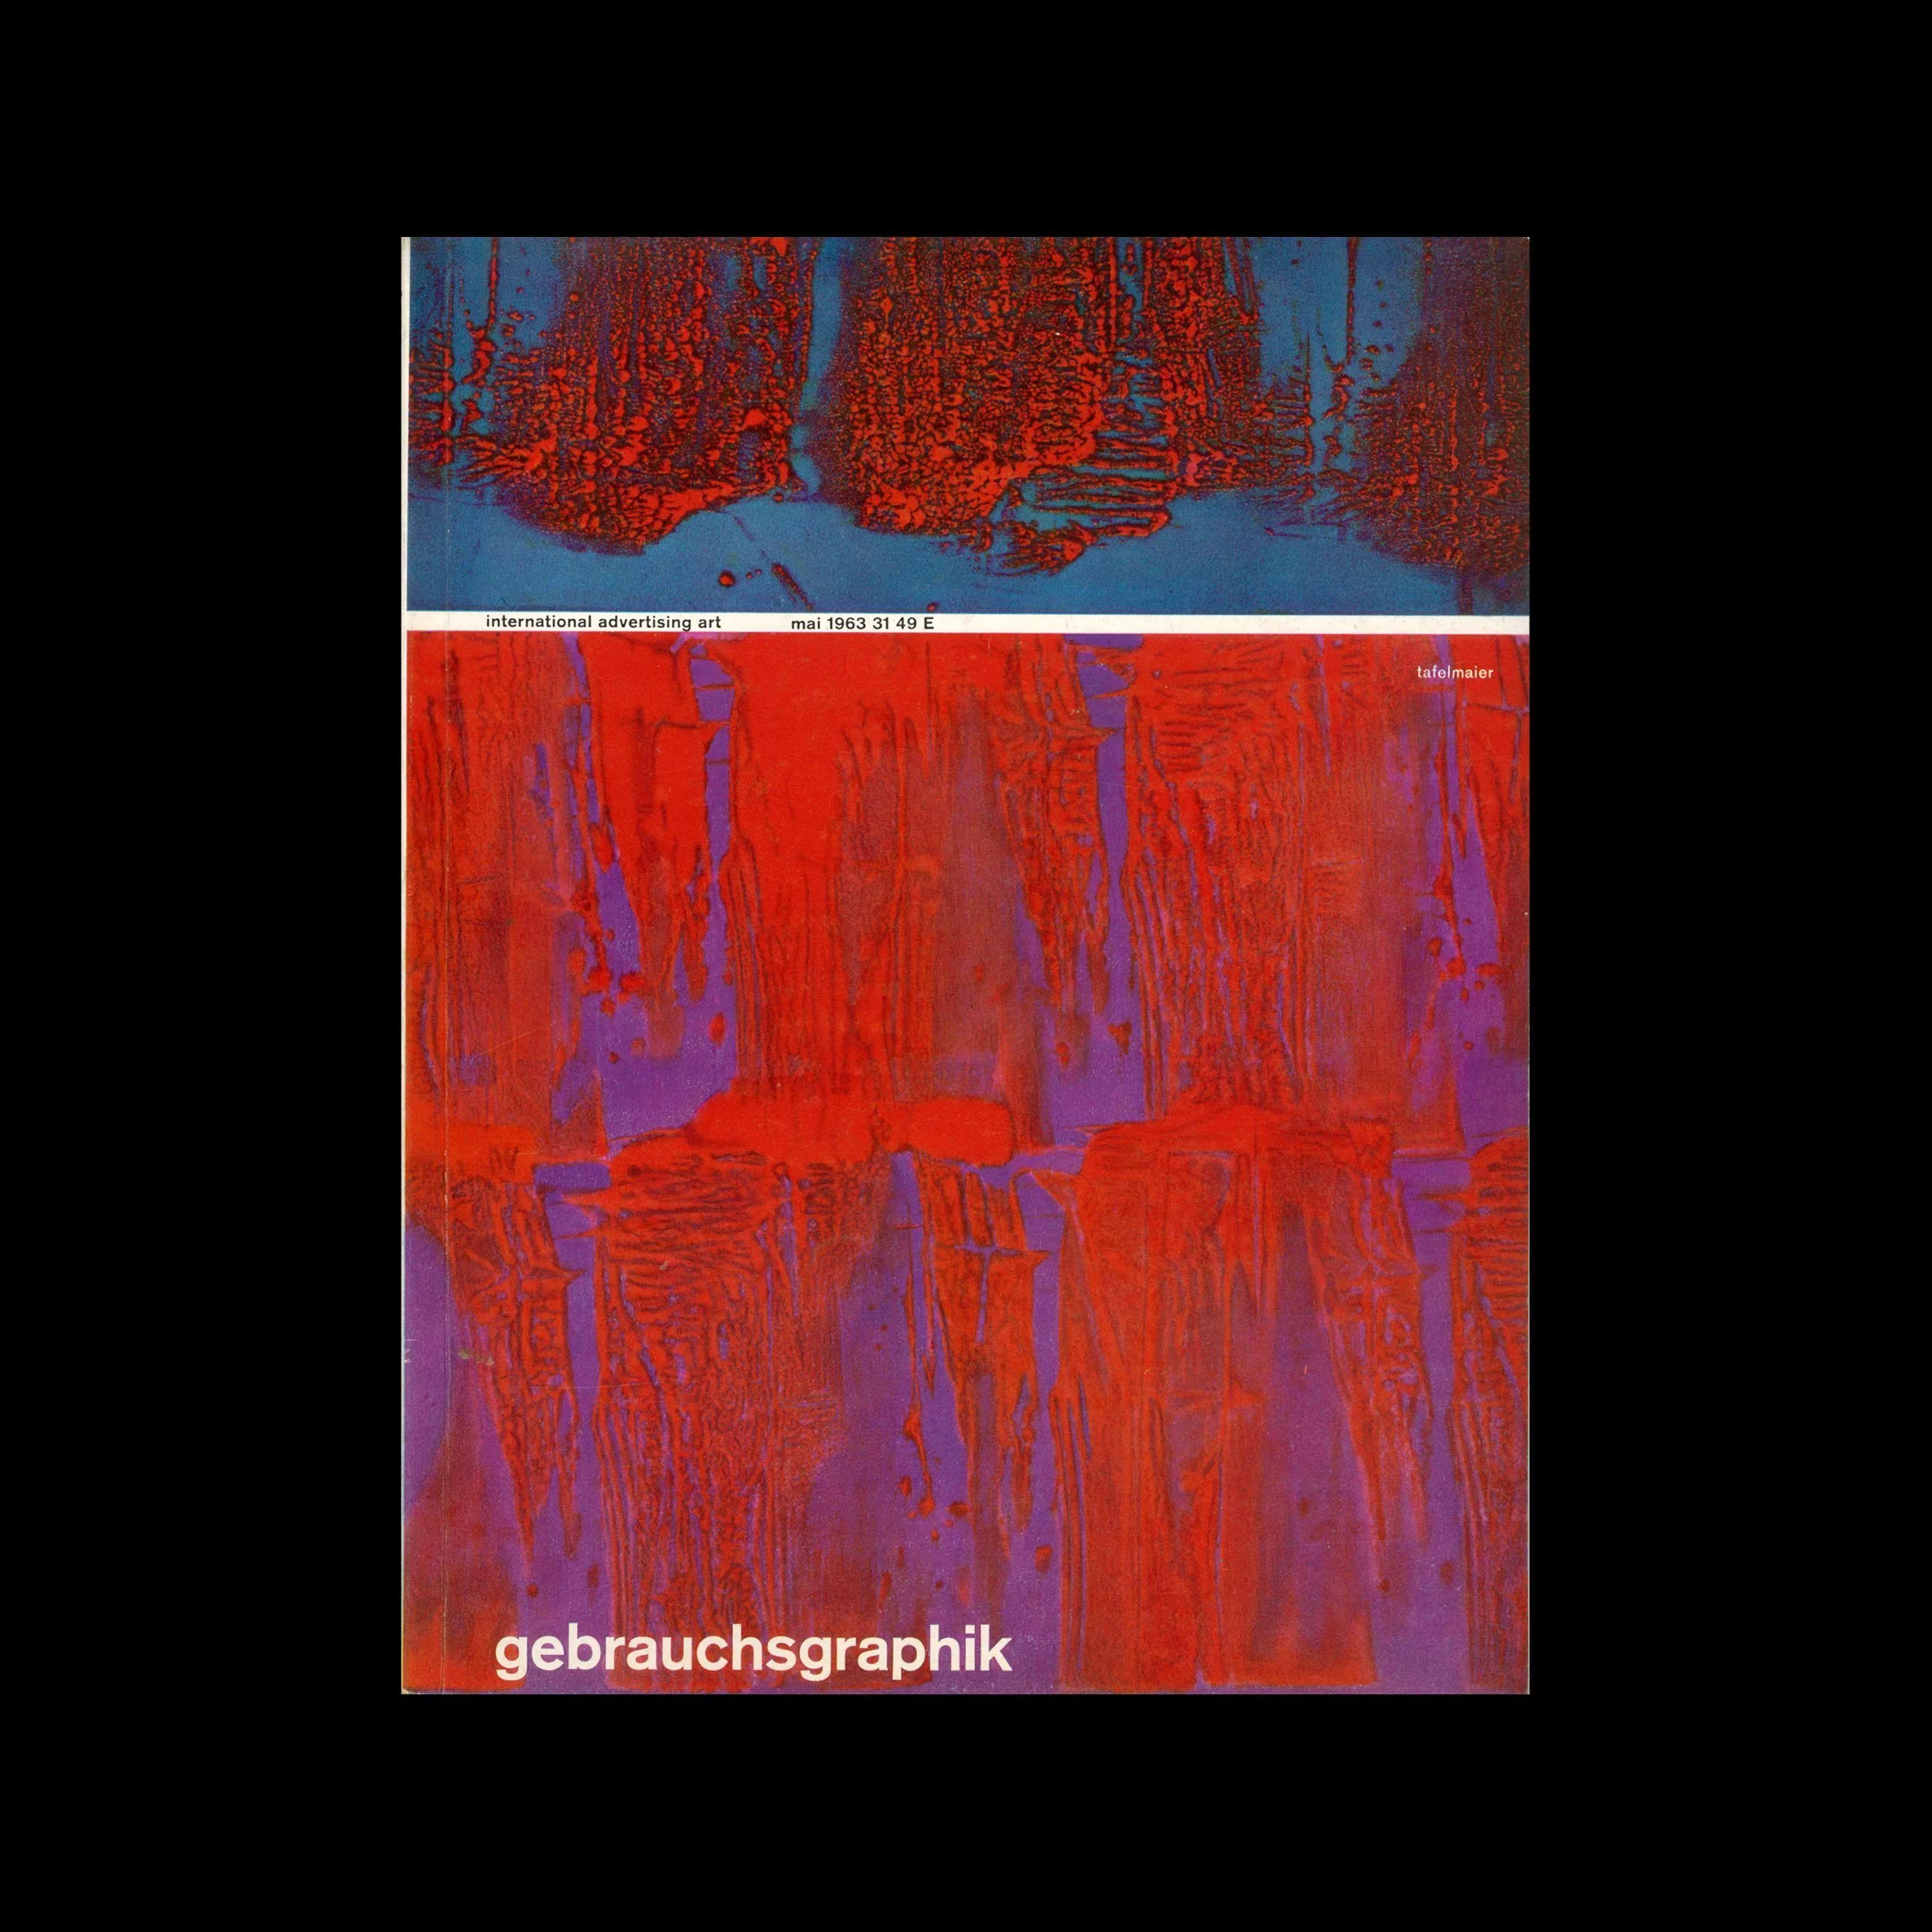 Gebrauchsgraphik, 5, 1963. Cover design by Walter Tafelmaier